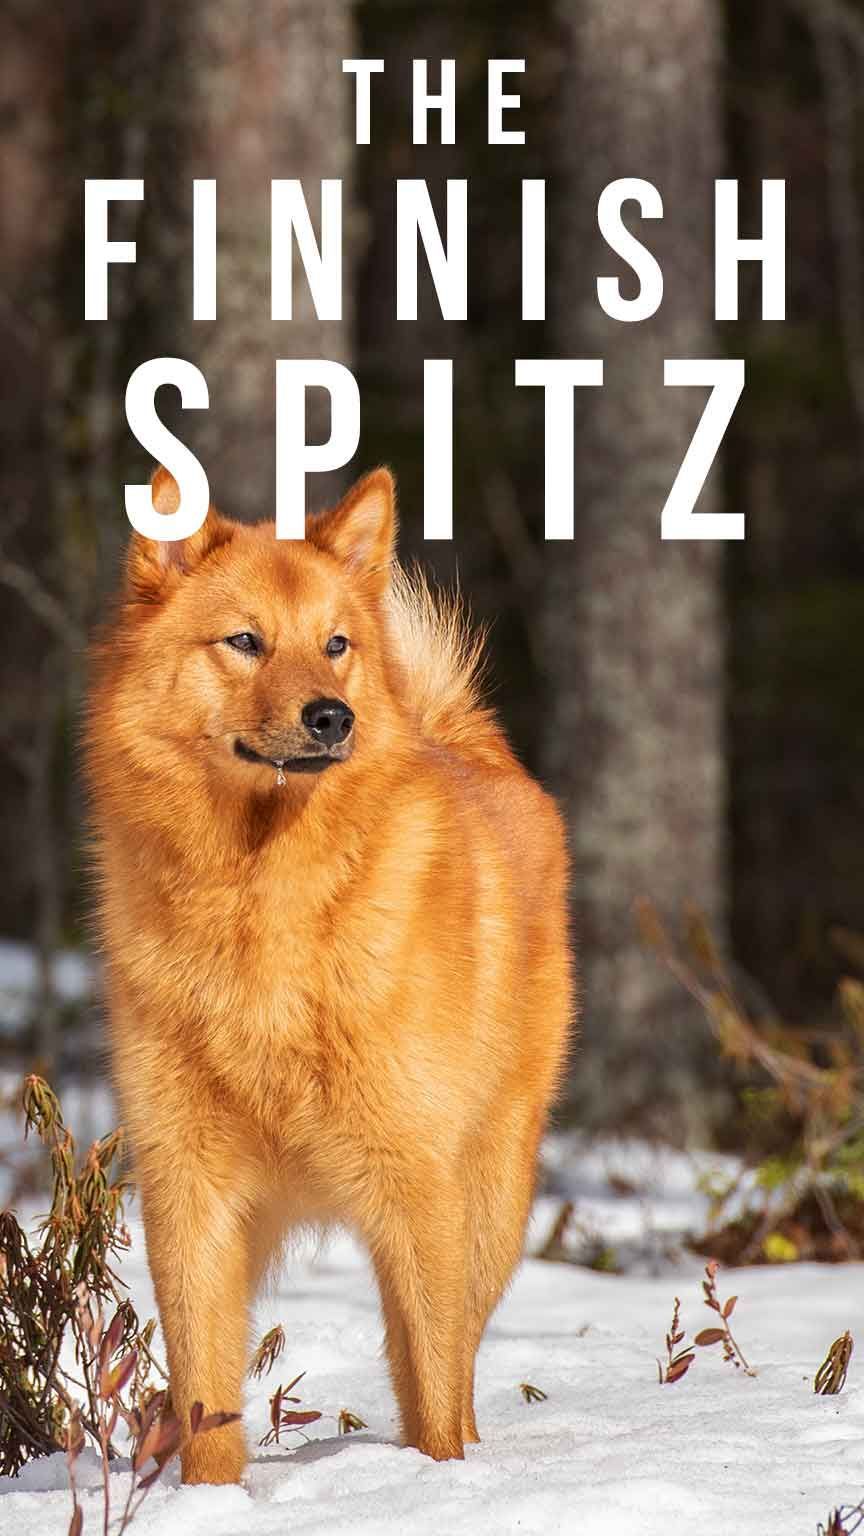 الفنلندية سبيتز - دليلك إلى سلالة الكلاب القديمة والمعزولة